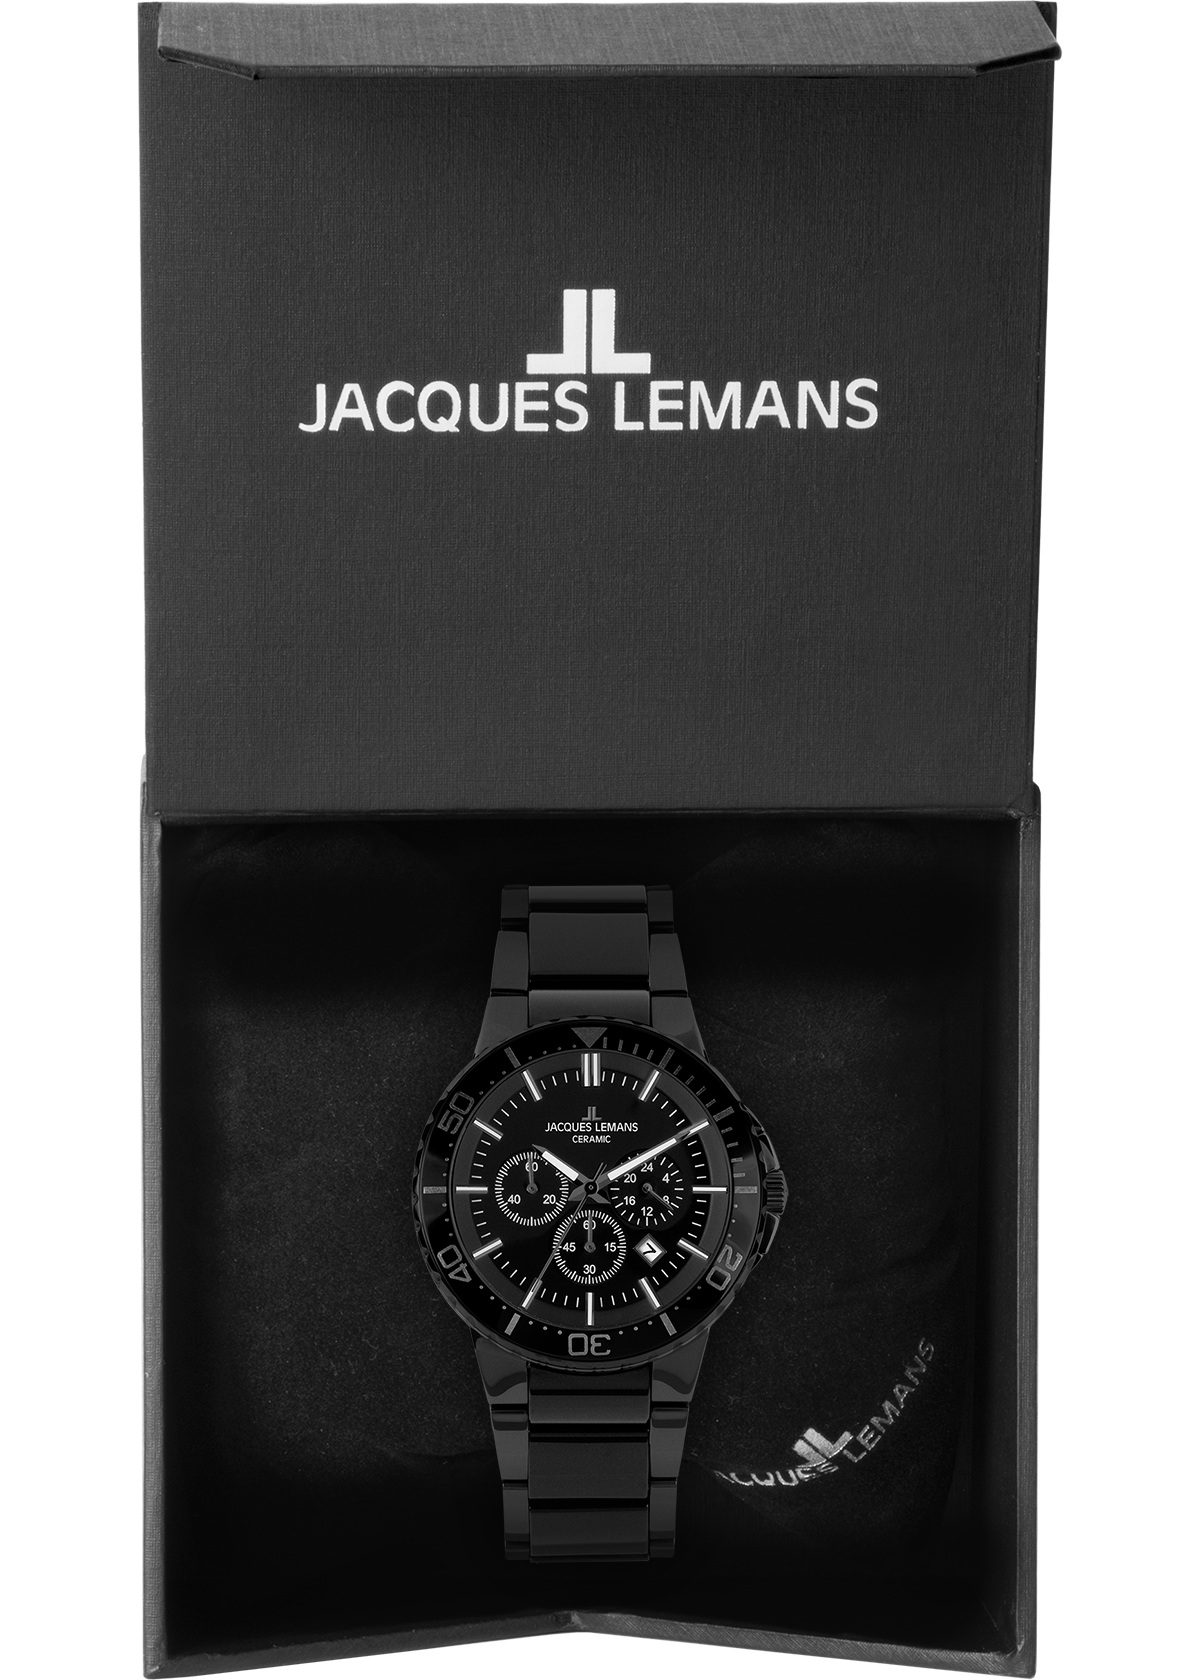 Jacques ♕ »1-2166B« bei Lemans Chronograph